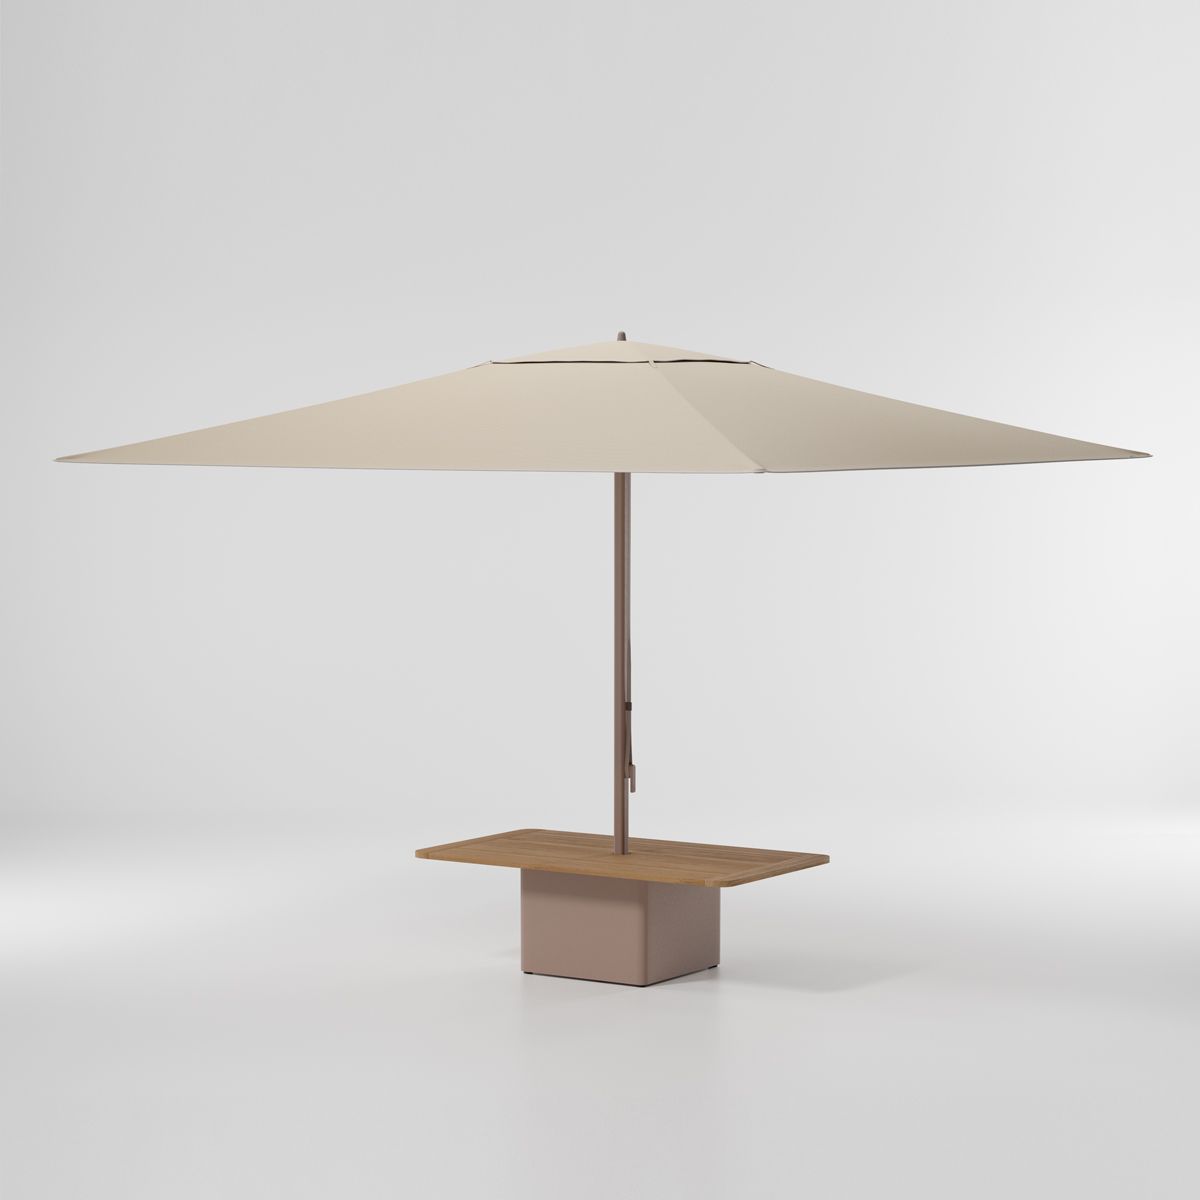 Meteo parasol con base para mesa de centro de acero 